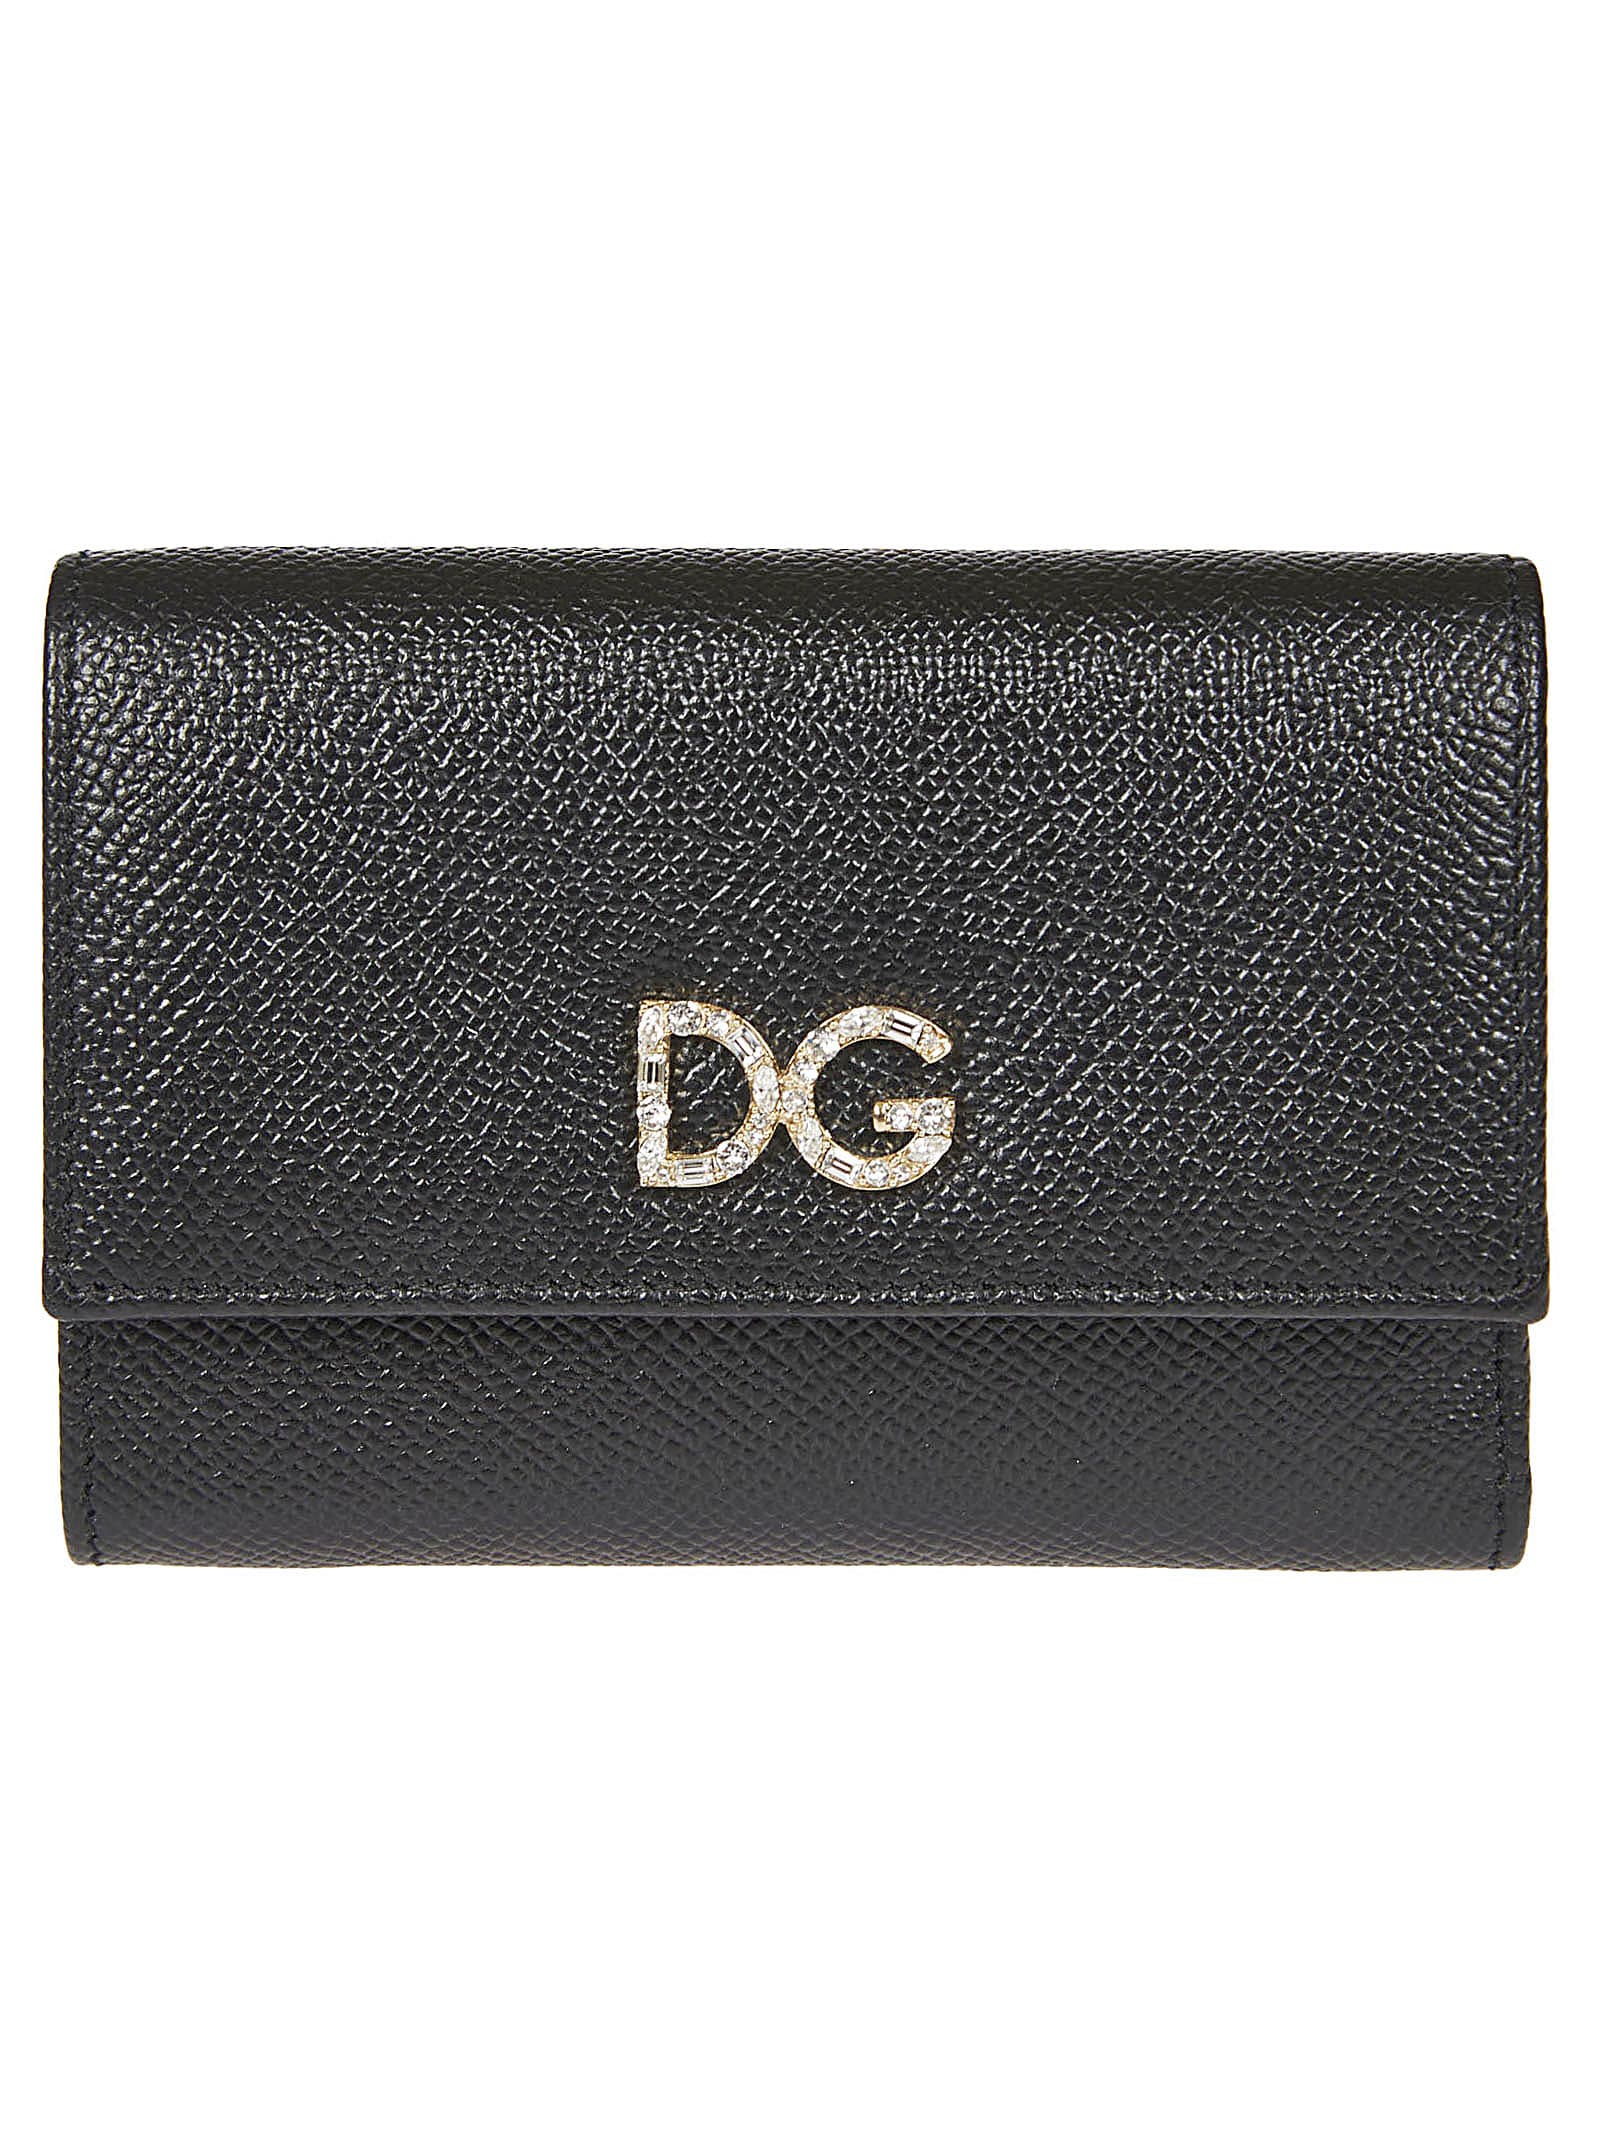 Dolce & Gabbana Logo Embellished Continental Wallet